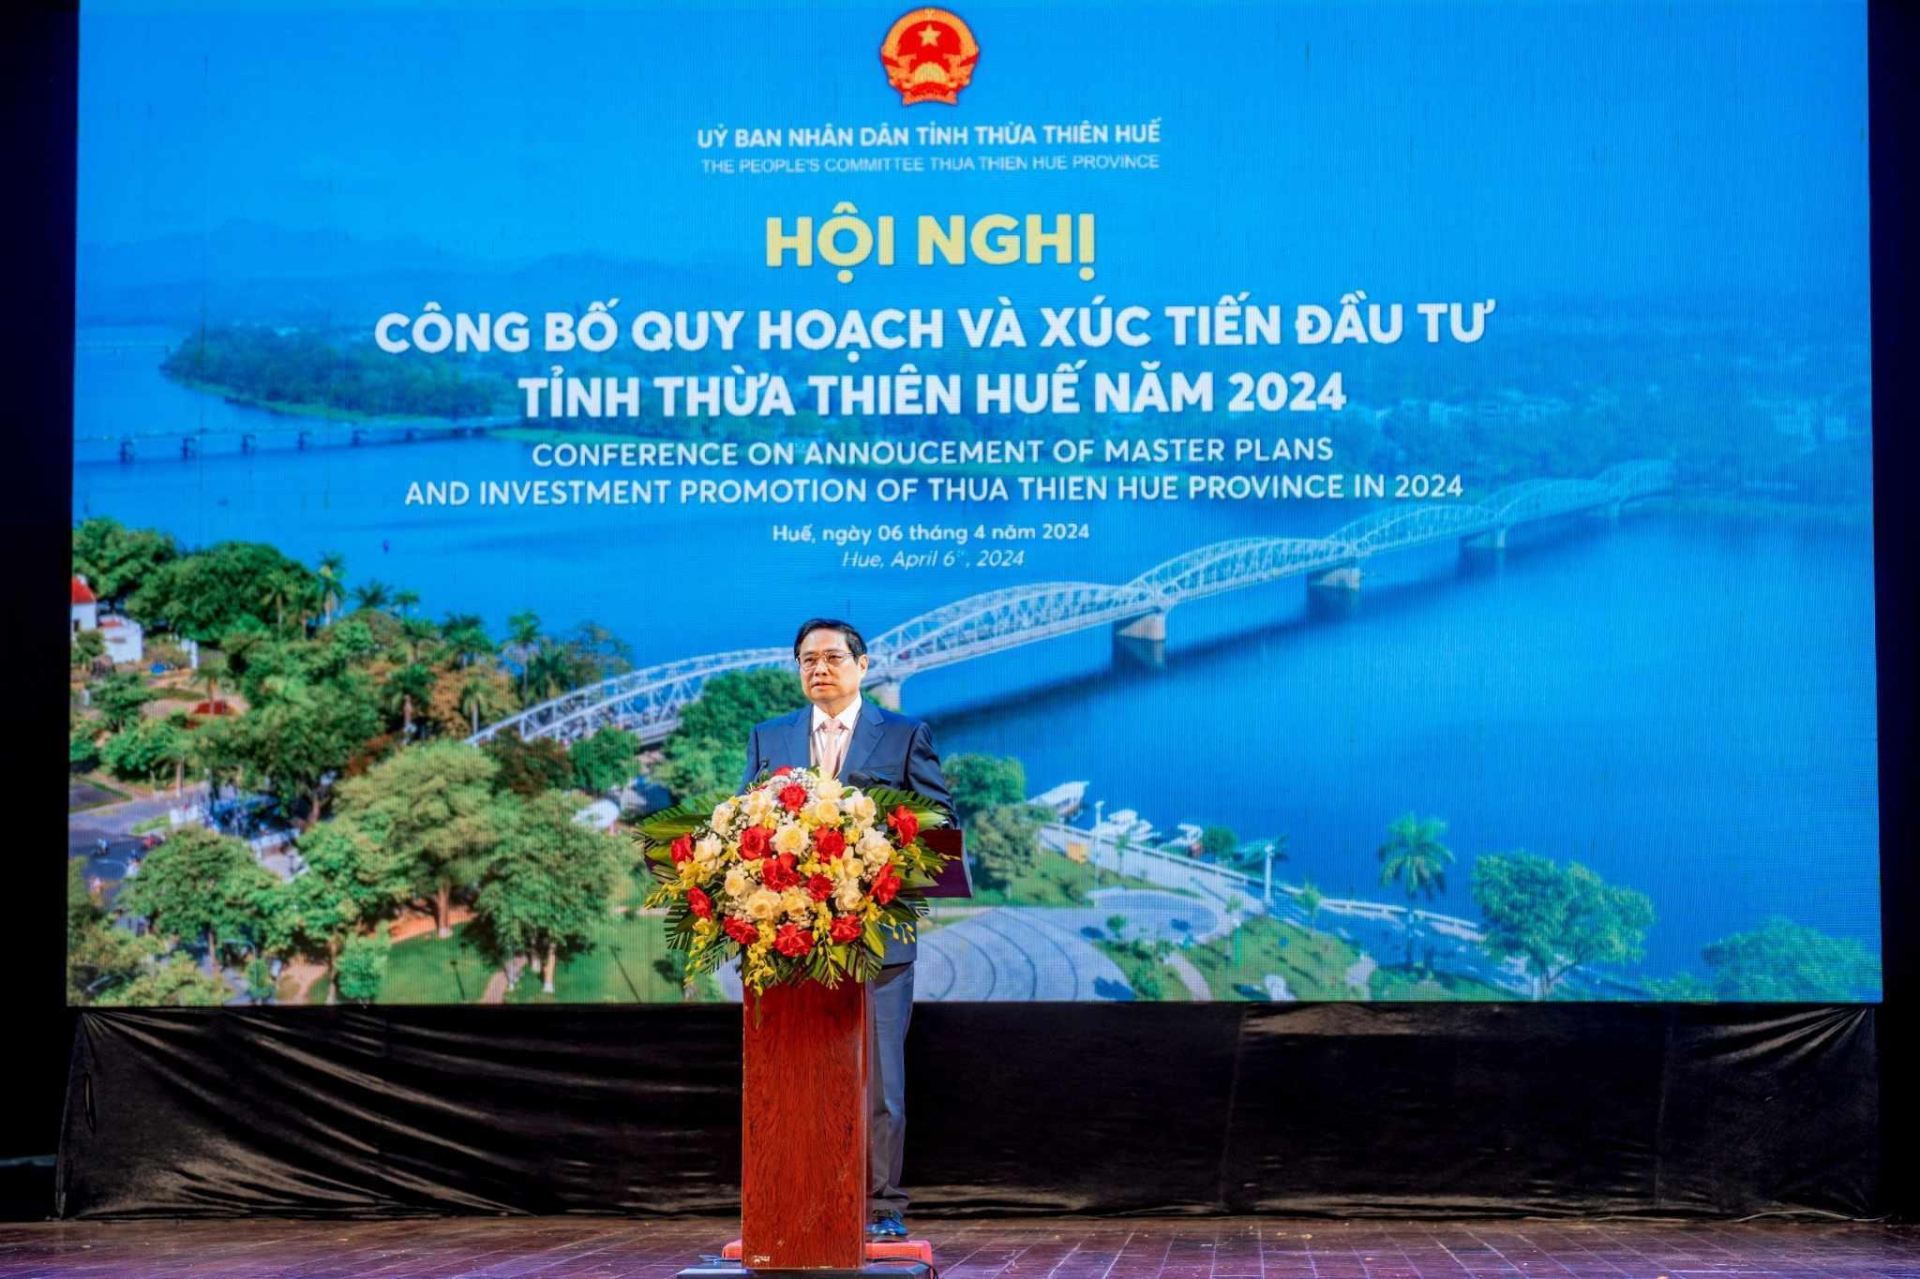 Thủ tướng Chính phủ Phạm Minh Chính phát biểu chỉ đạo tại Hội nghị công bố Quy hoạch và xúc tiến đầu tư tỉnh Thừa Thiên - Huế năm 2024.